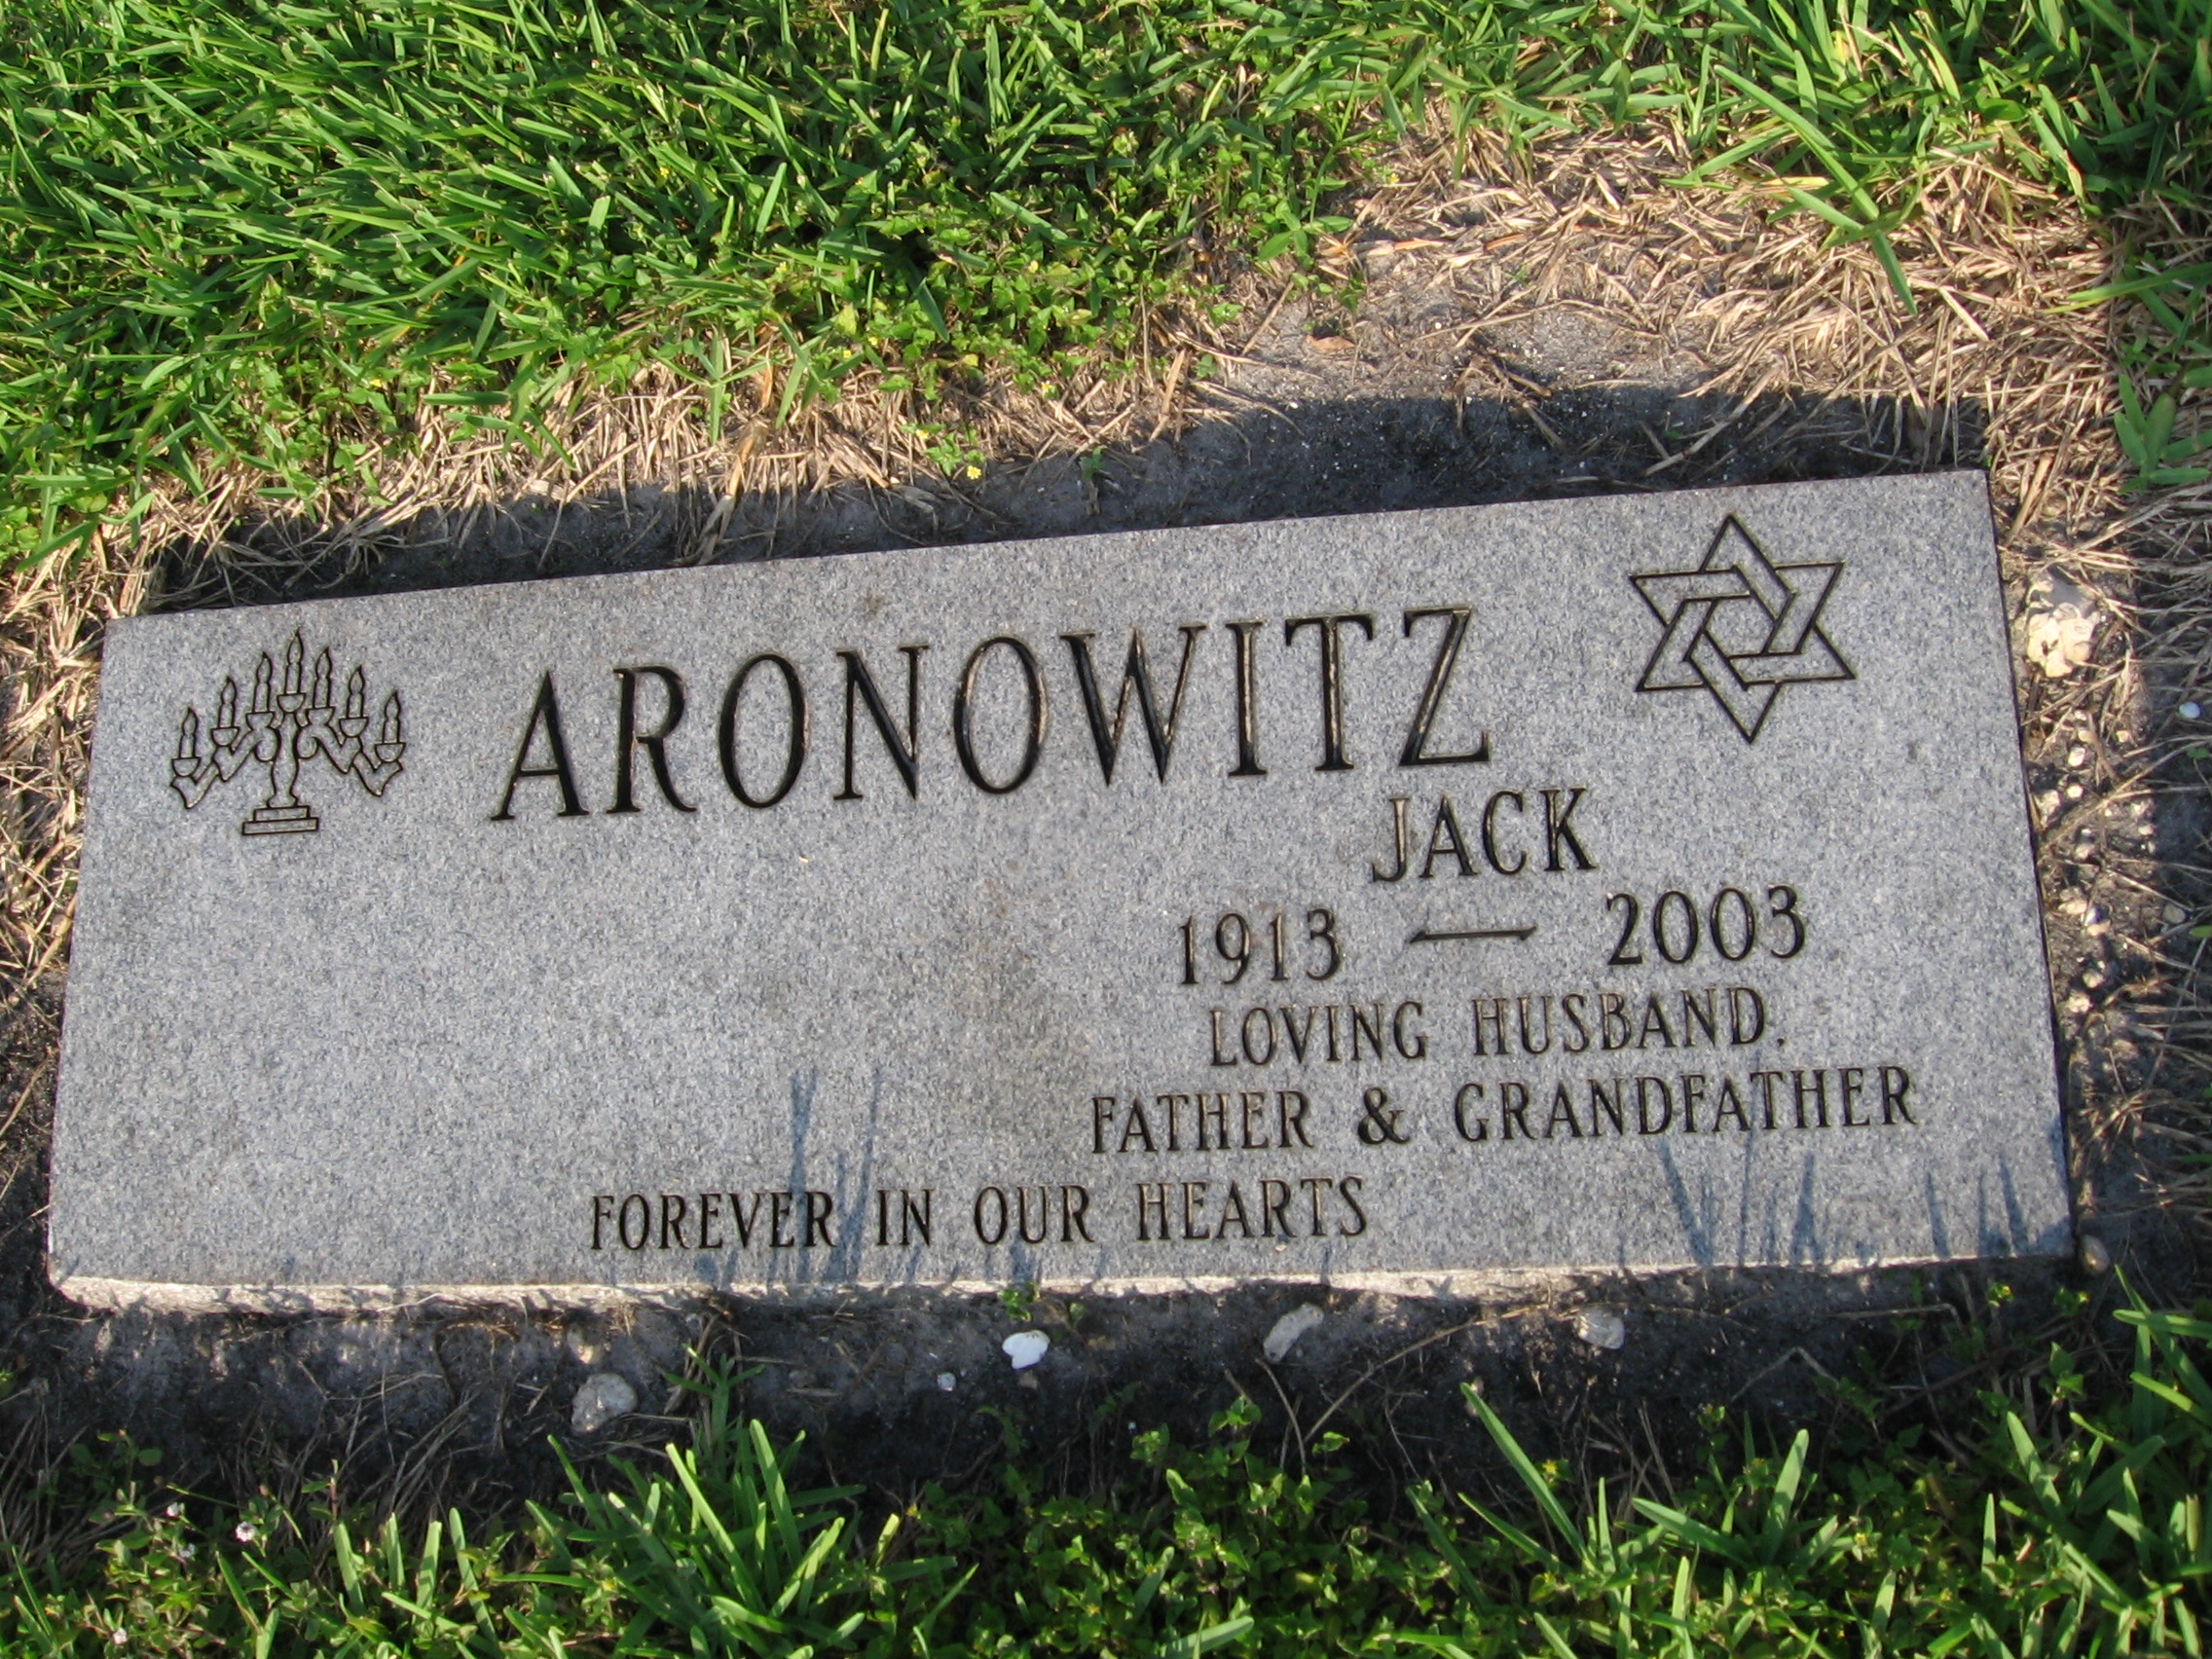 Jack Aronowitz